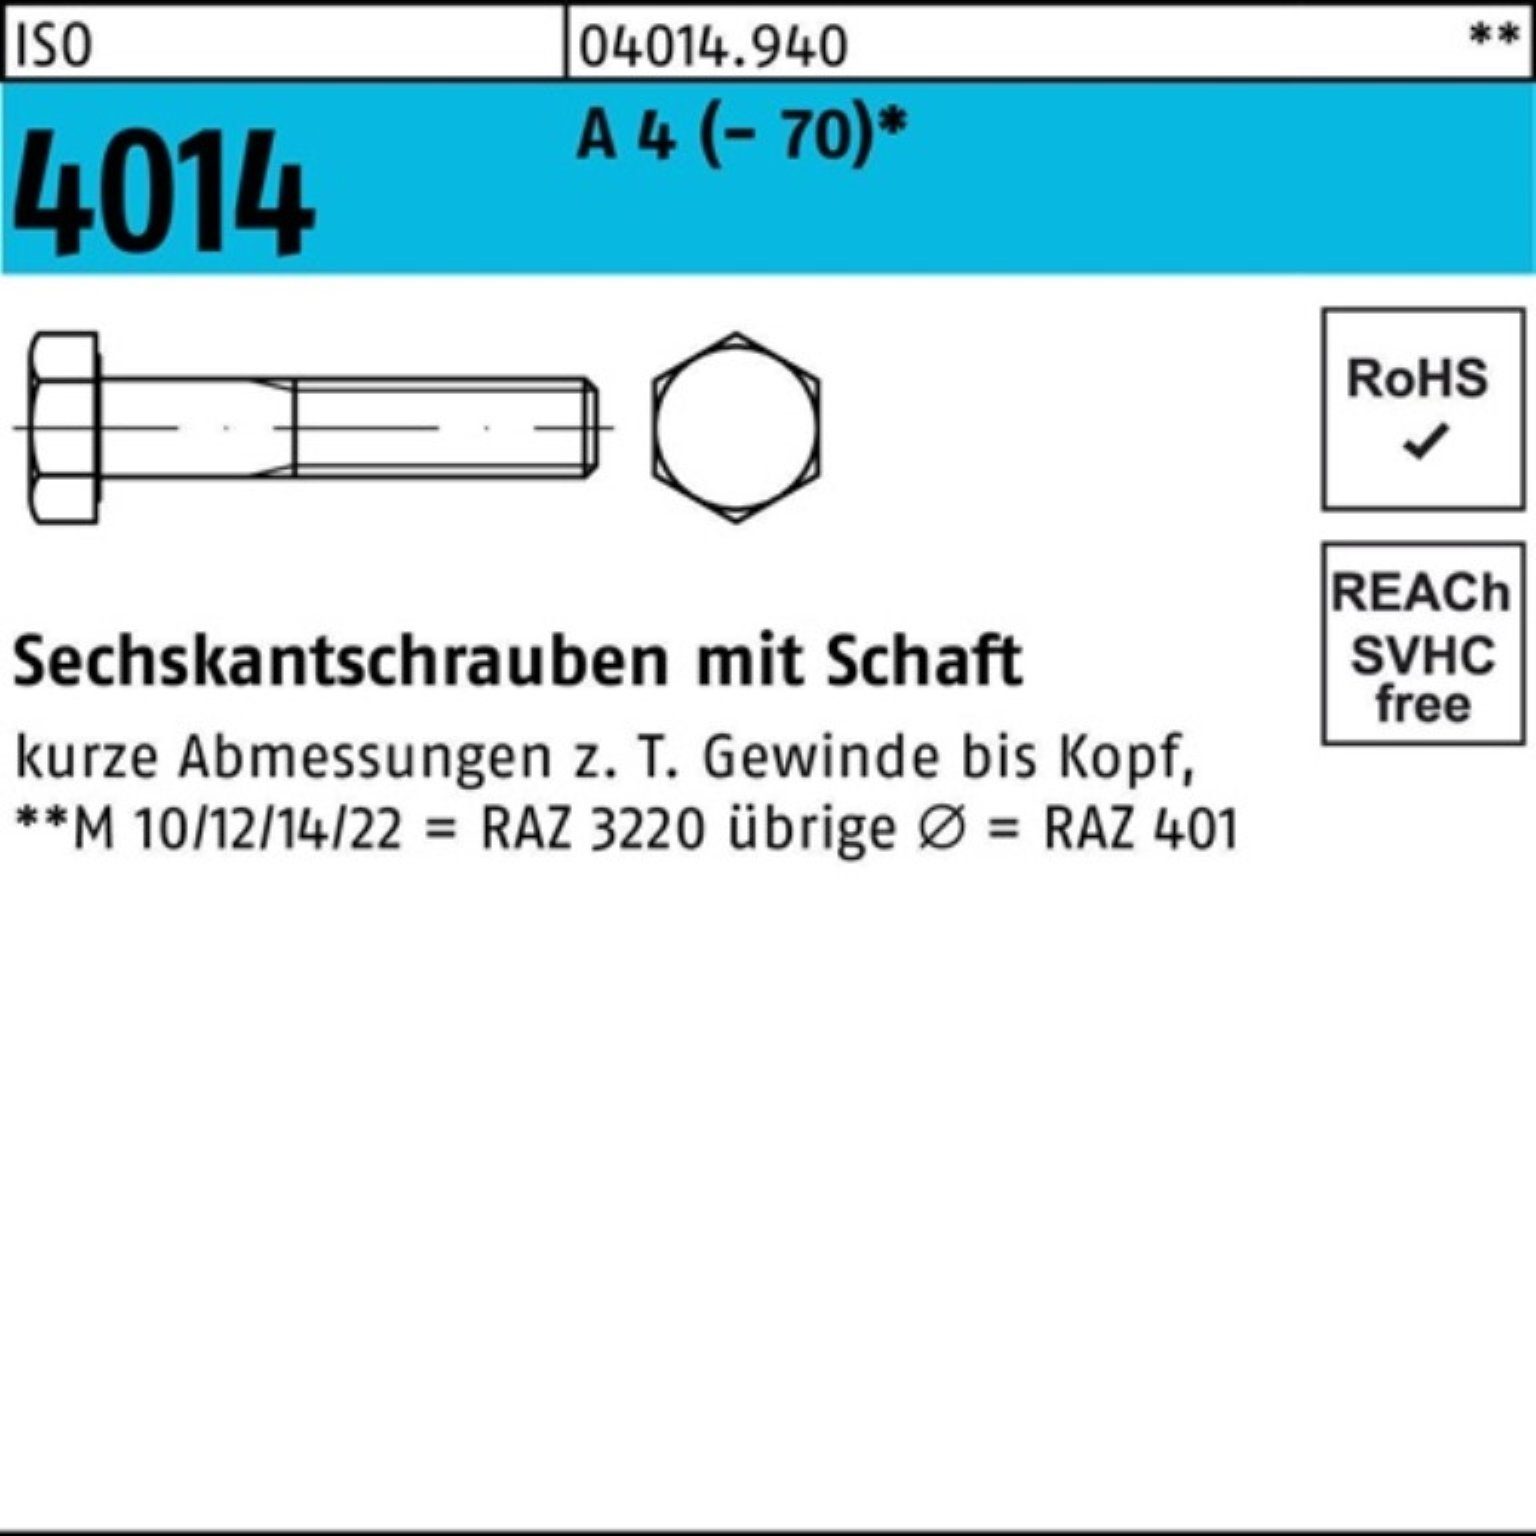 Bufab Sechskantschraube 100er Pack Sechskantschraube A ISO 100 Schaft 4014 4 St 90 (70) M5x